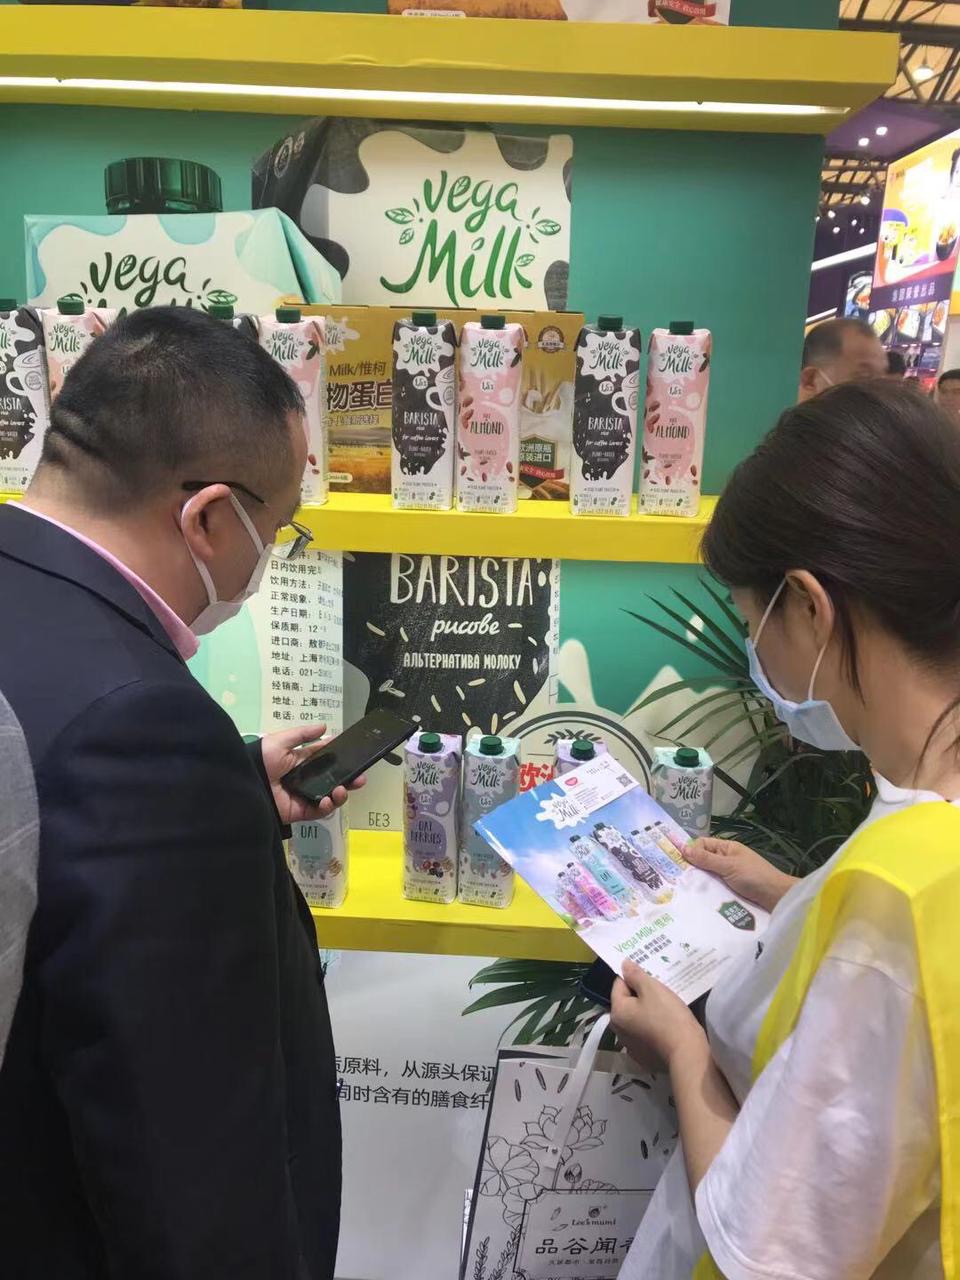 Рослинне молоко Vega Milk було представлено на Sial China 2021 – міжнародній виставці в Китаї